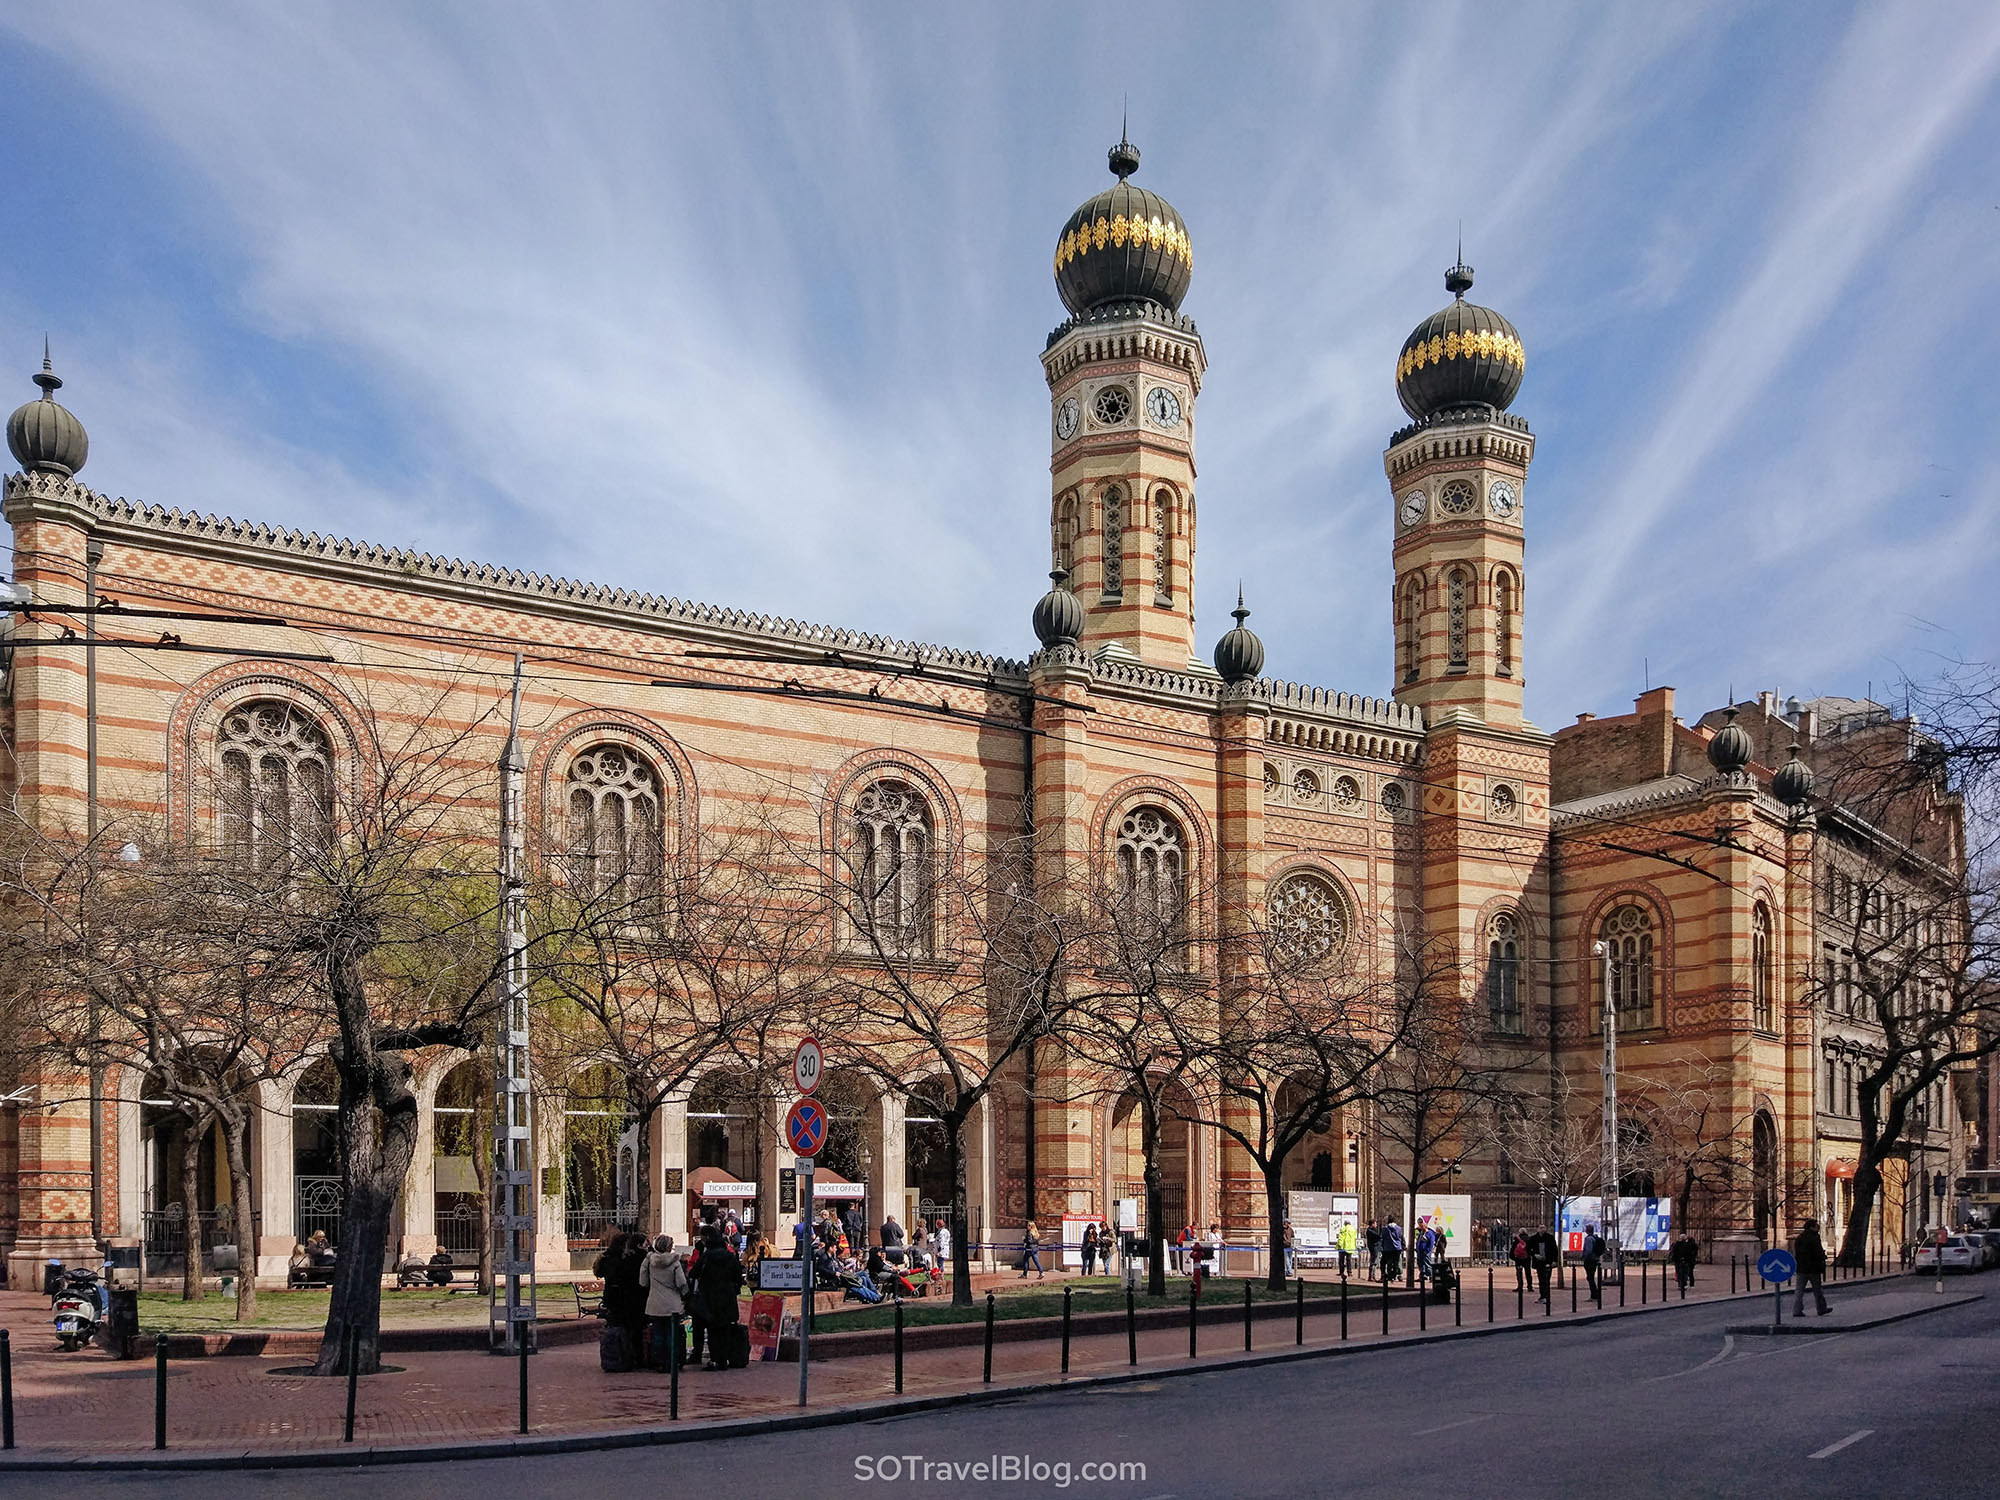 אטרקציות בבודפשט - בית הכנסת הגדול